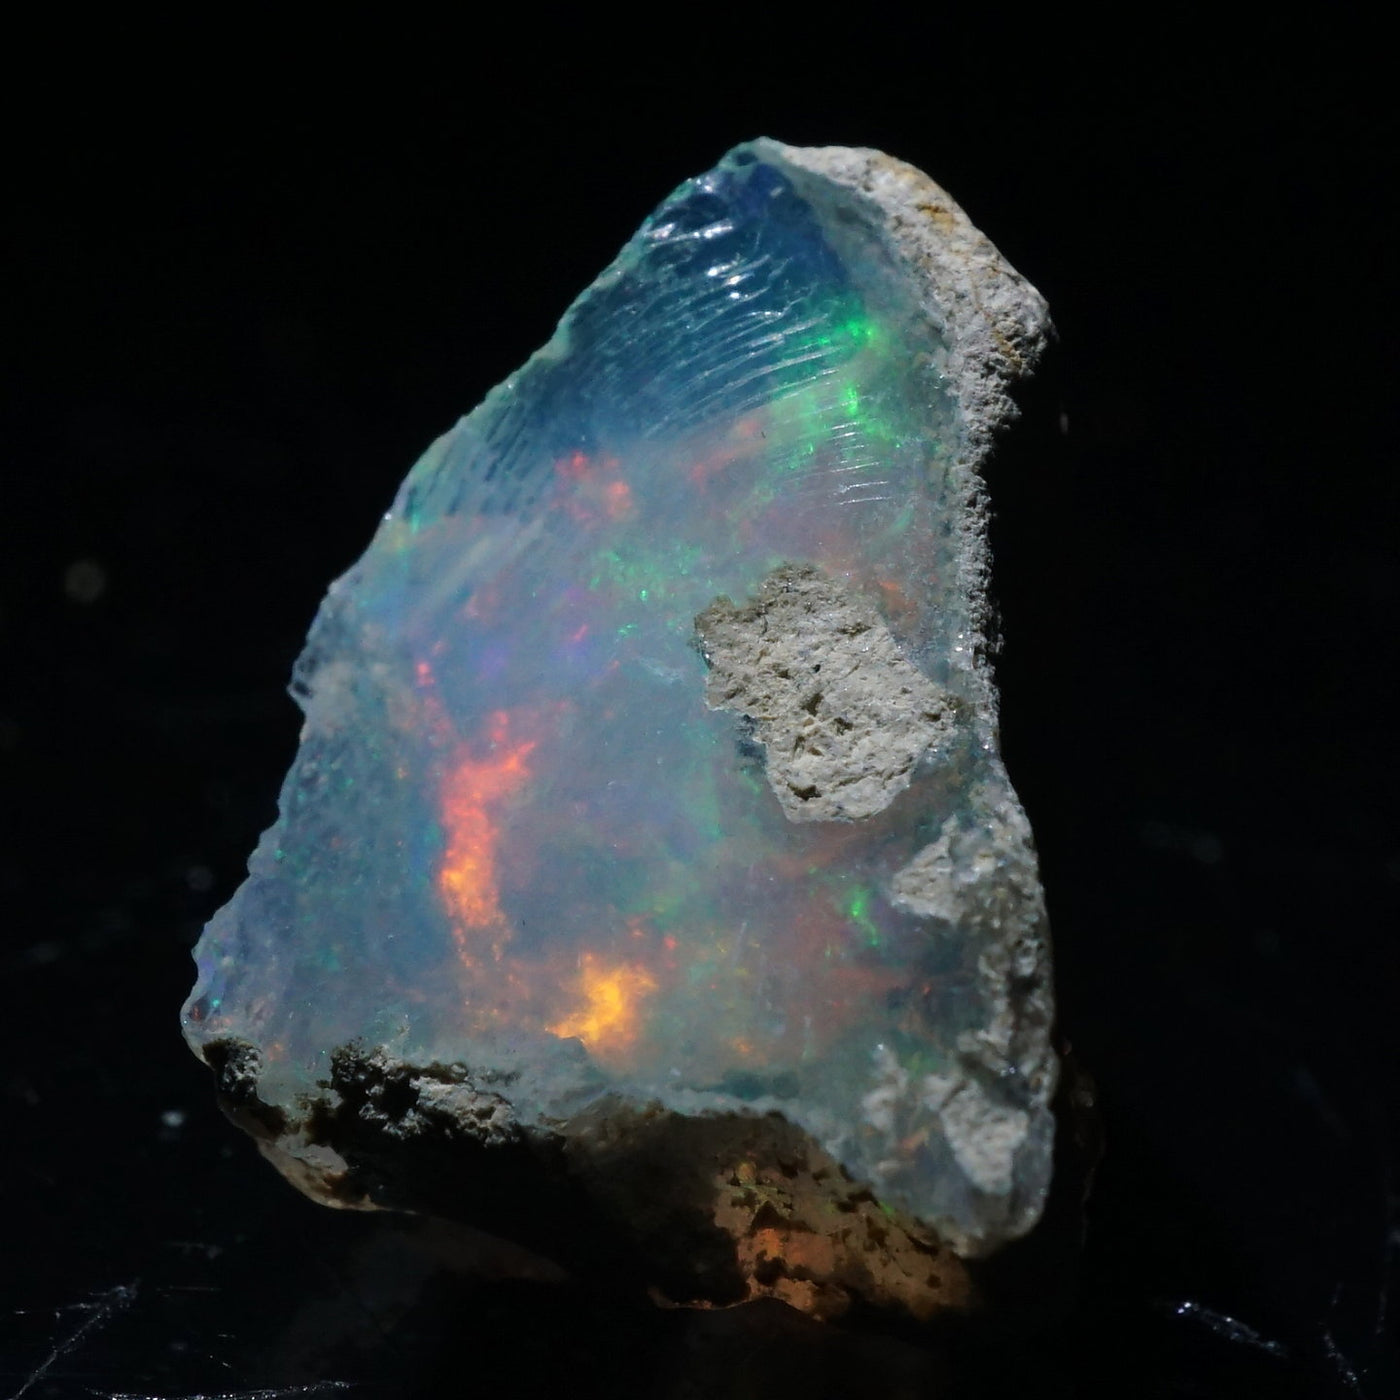 エチオピア産 オパール – 天然石ハッピーギフト